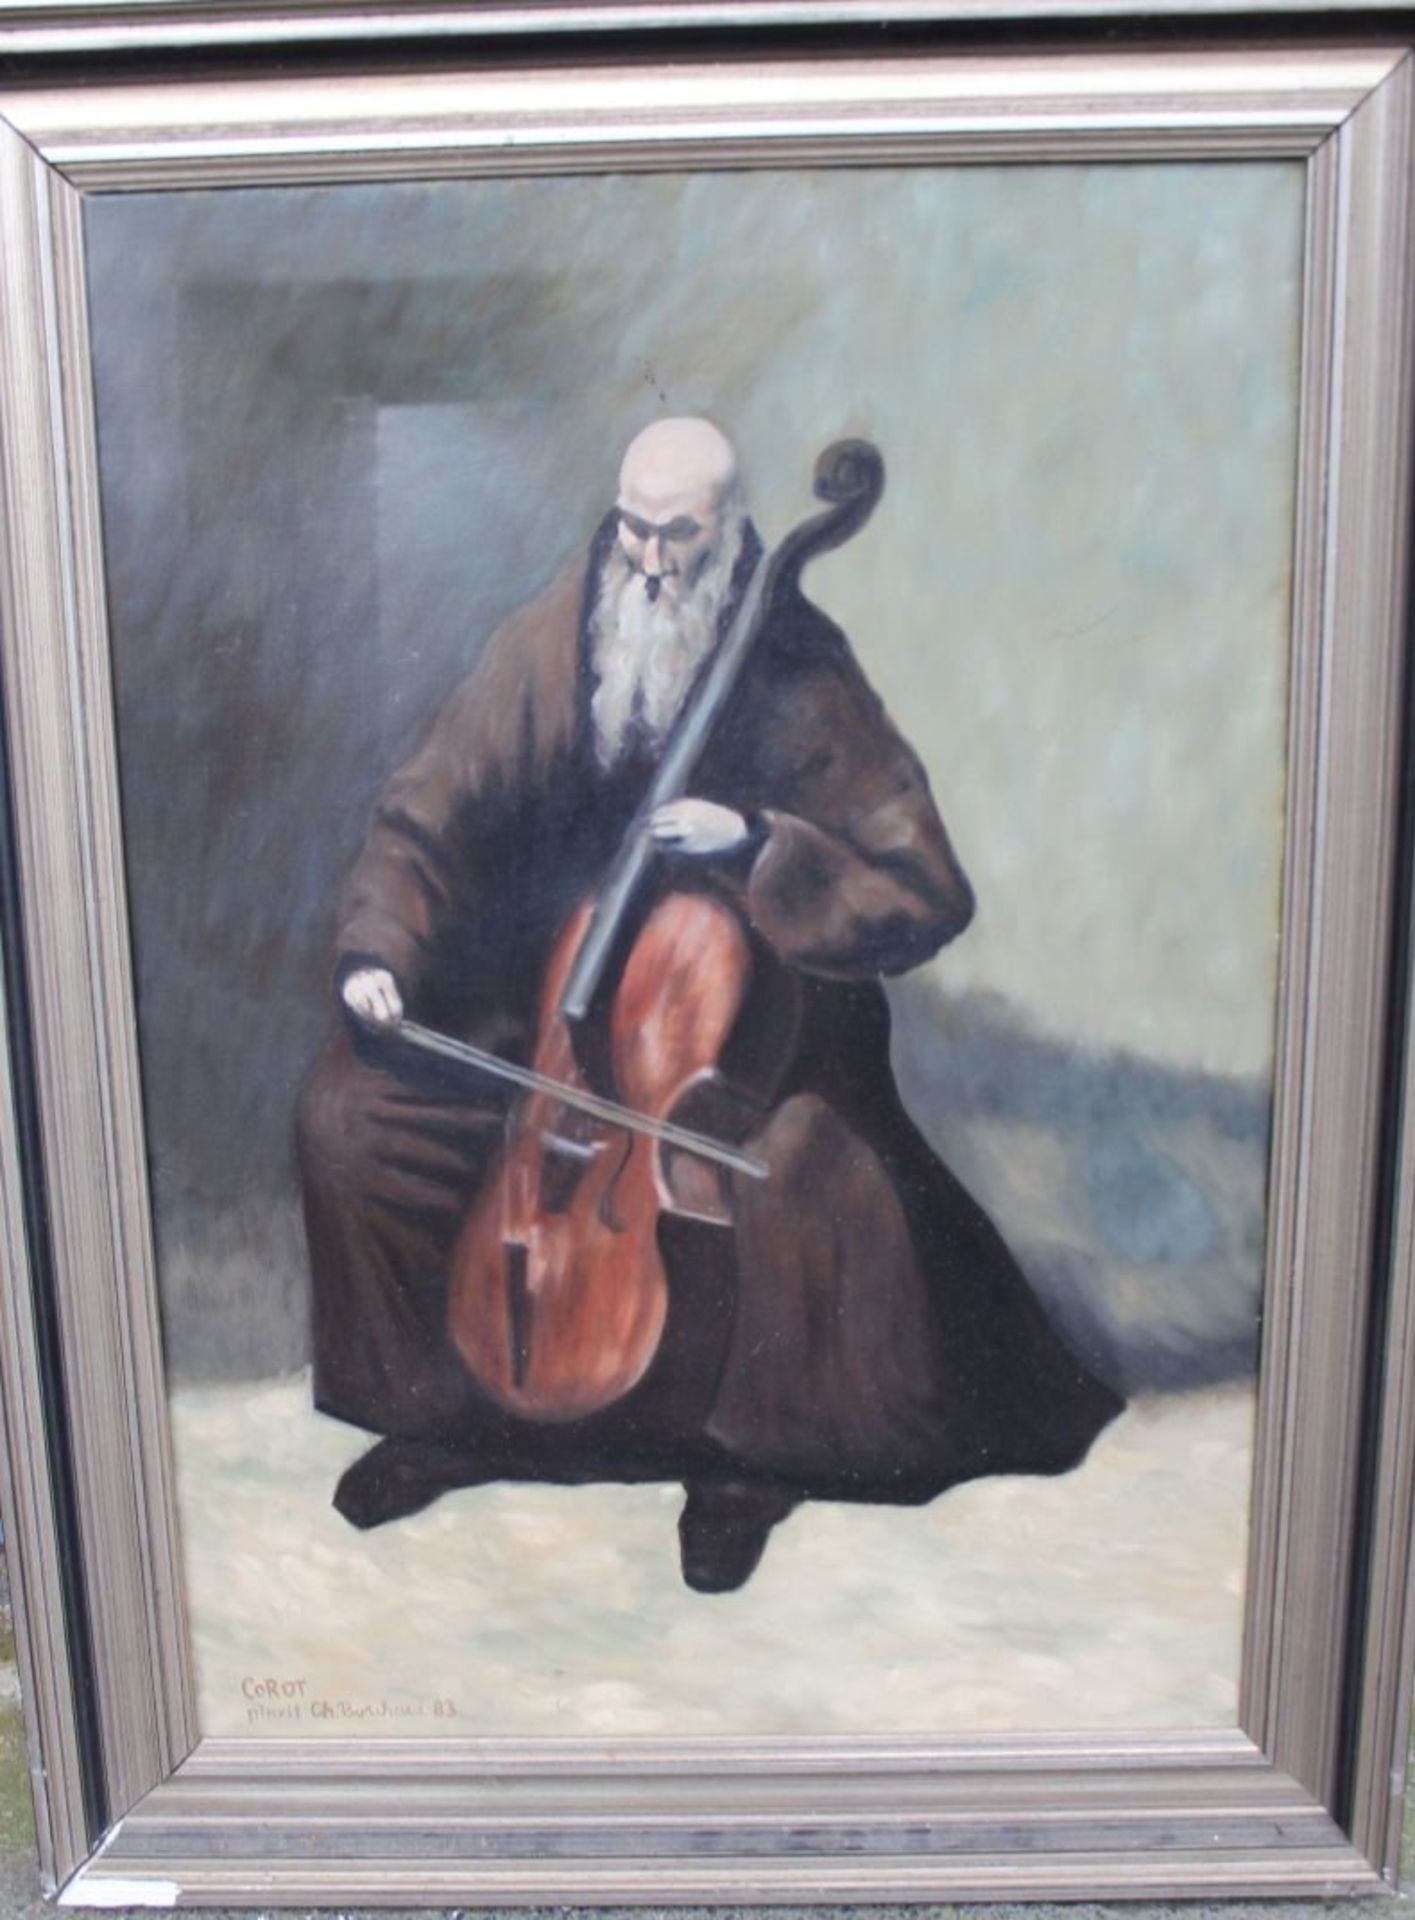 Ch. Borchard (18)83 "Cellospieler" Kopie nach Corot, Öl/Leinen, alt gerahmt, RG 82x63 cm